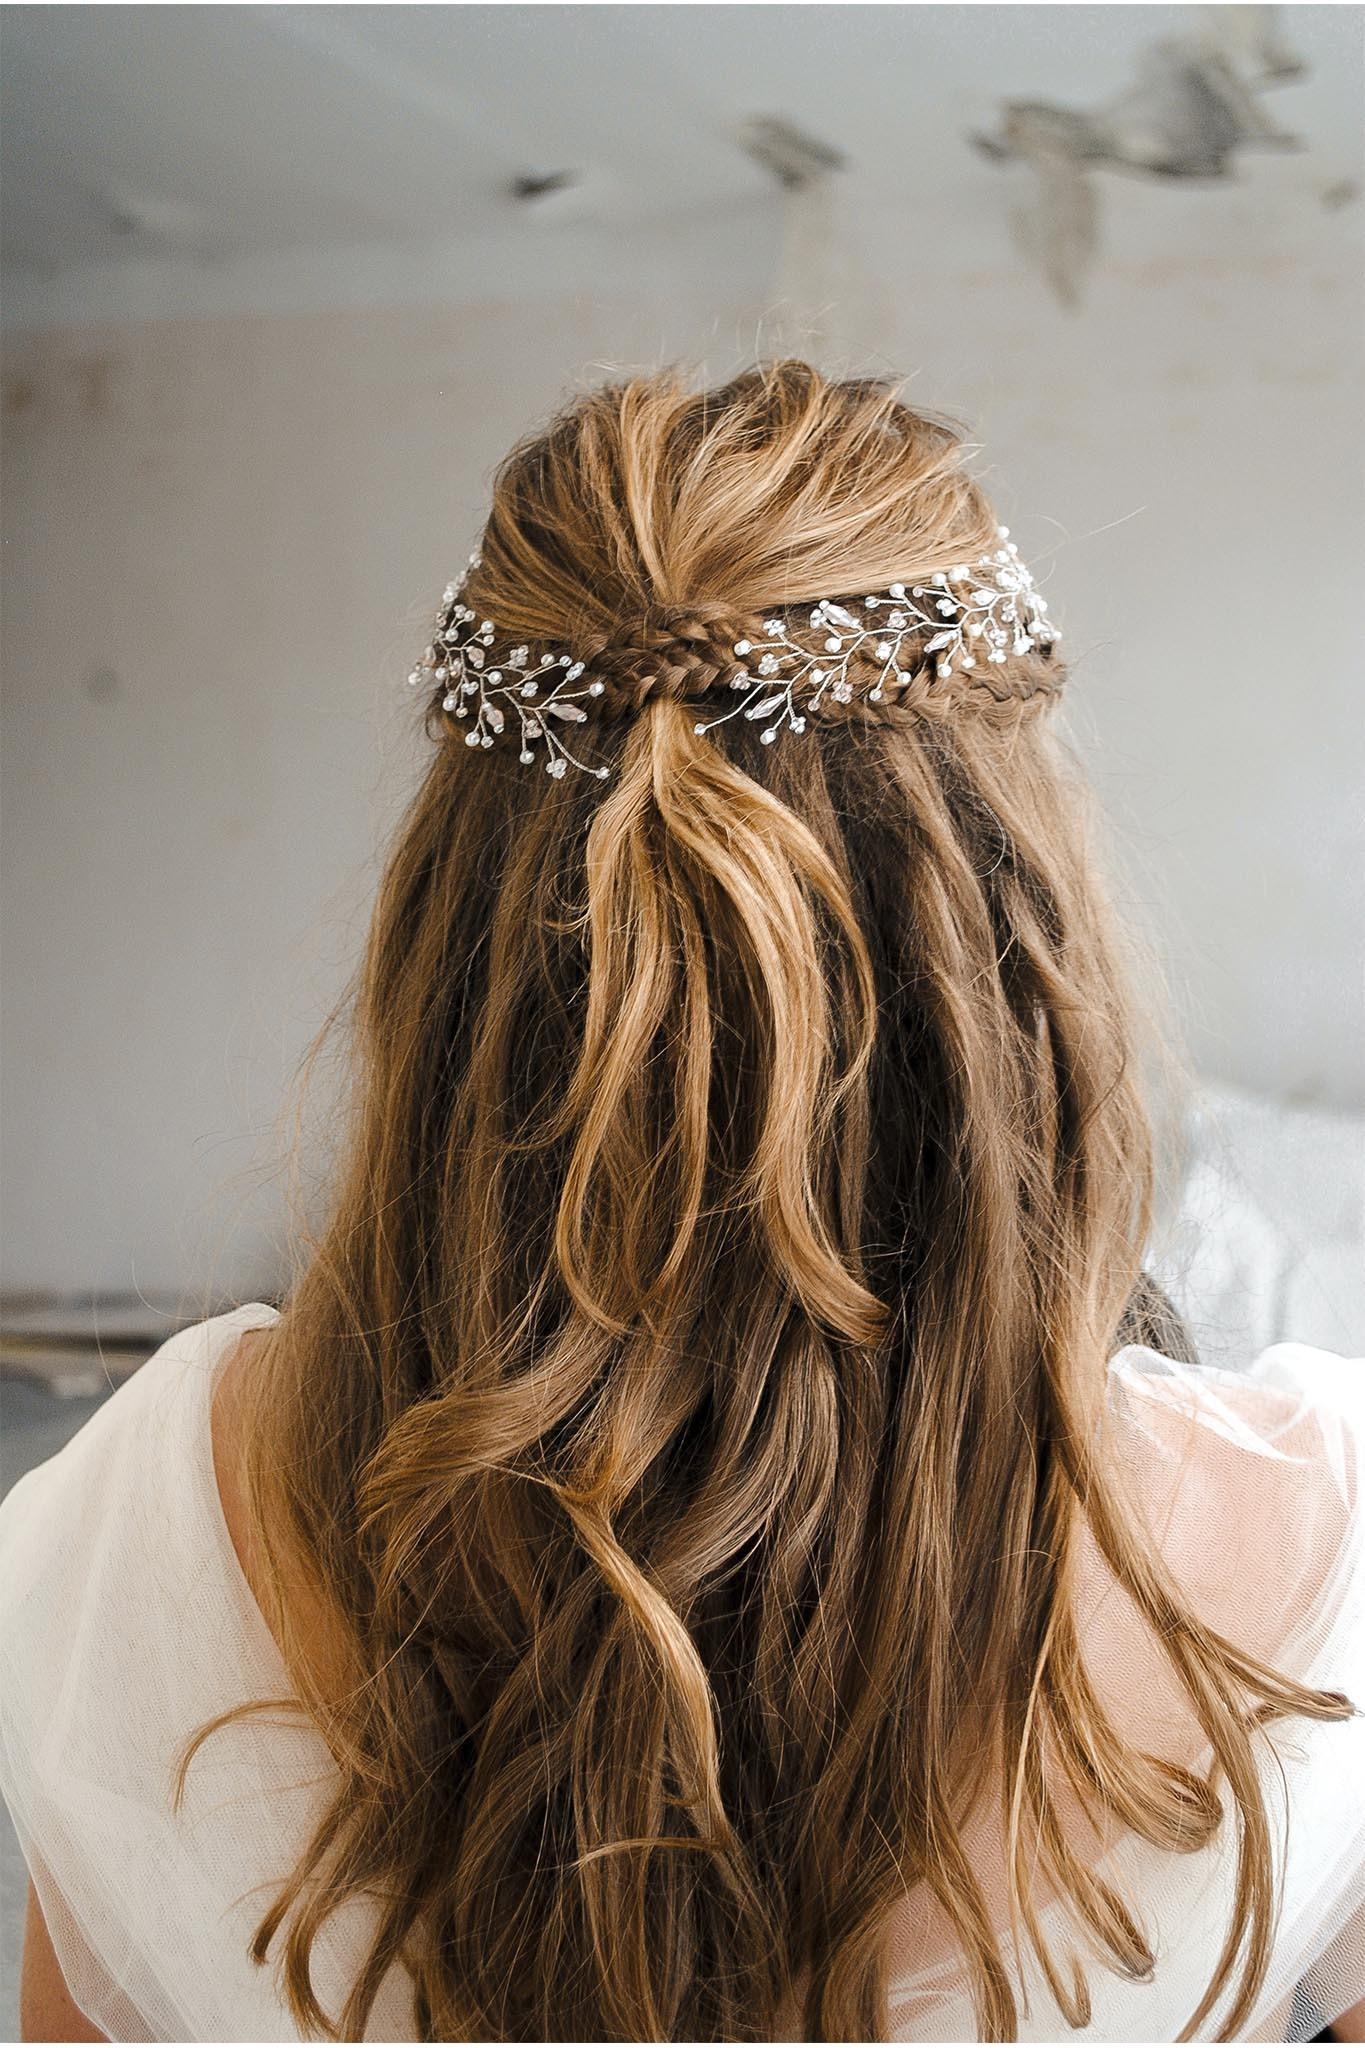 8 adornos para el pelo con los que dar un toque festivo a todos tus looks